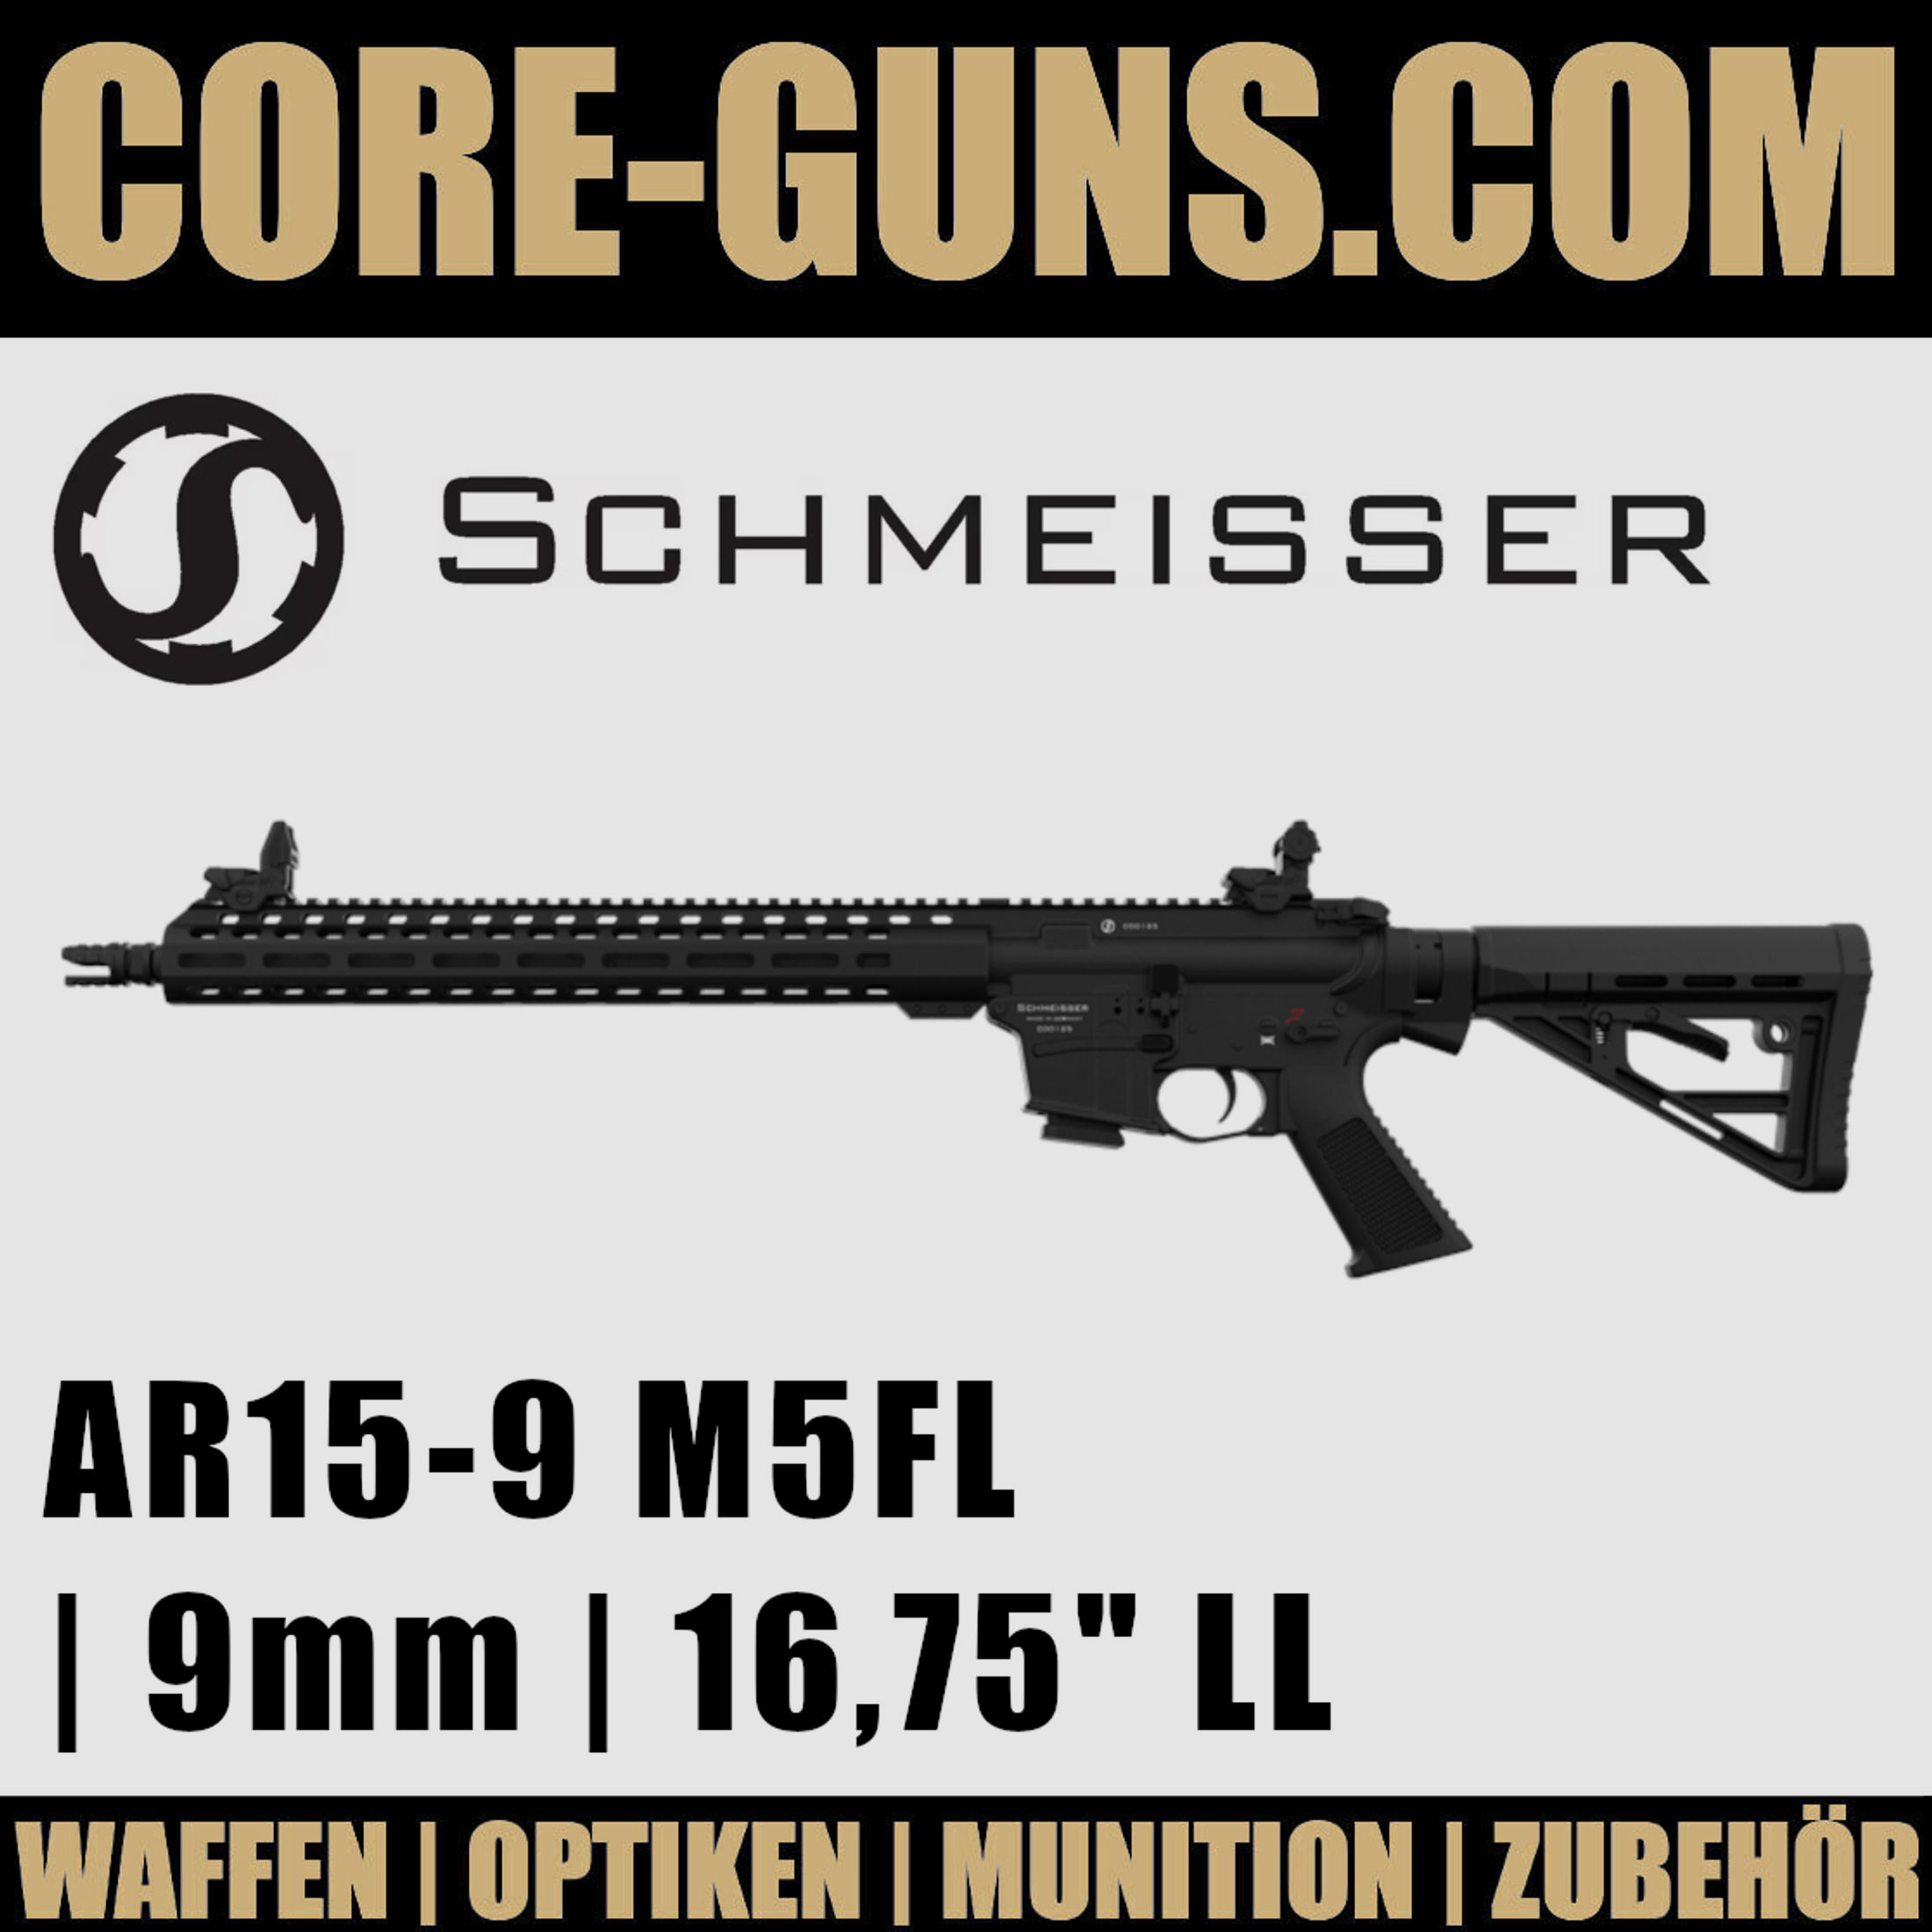 SCHMEISSER AR15-9 M5FL Schmeisser AR15-9 16,75" 9mm Luger Selbstladebüchse